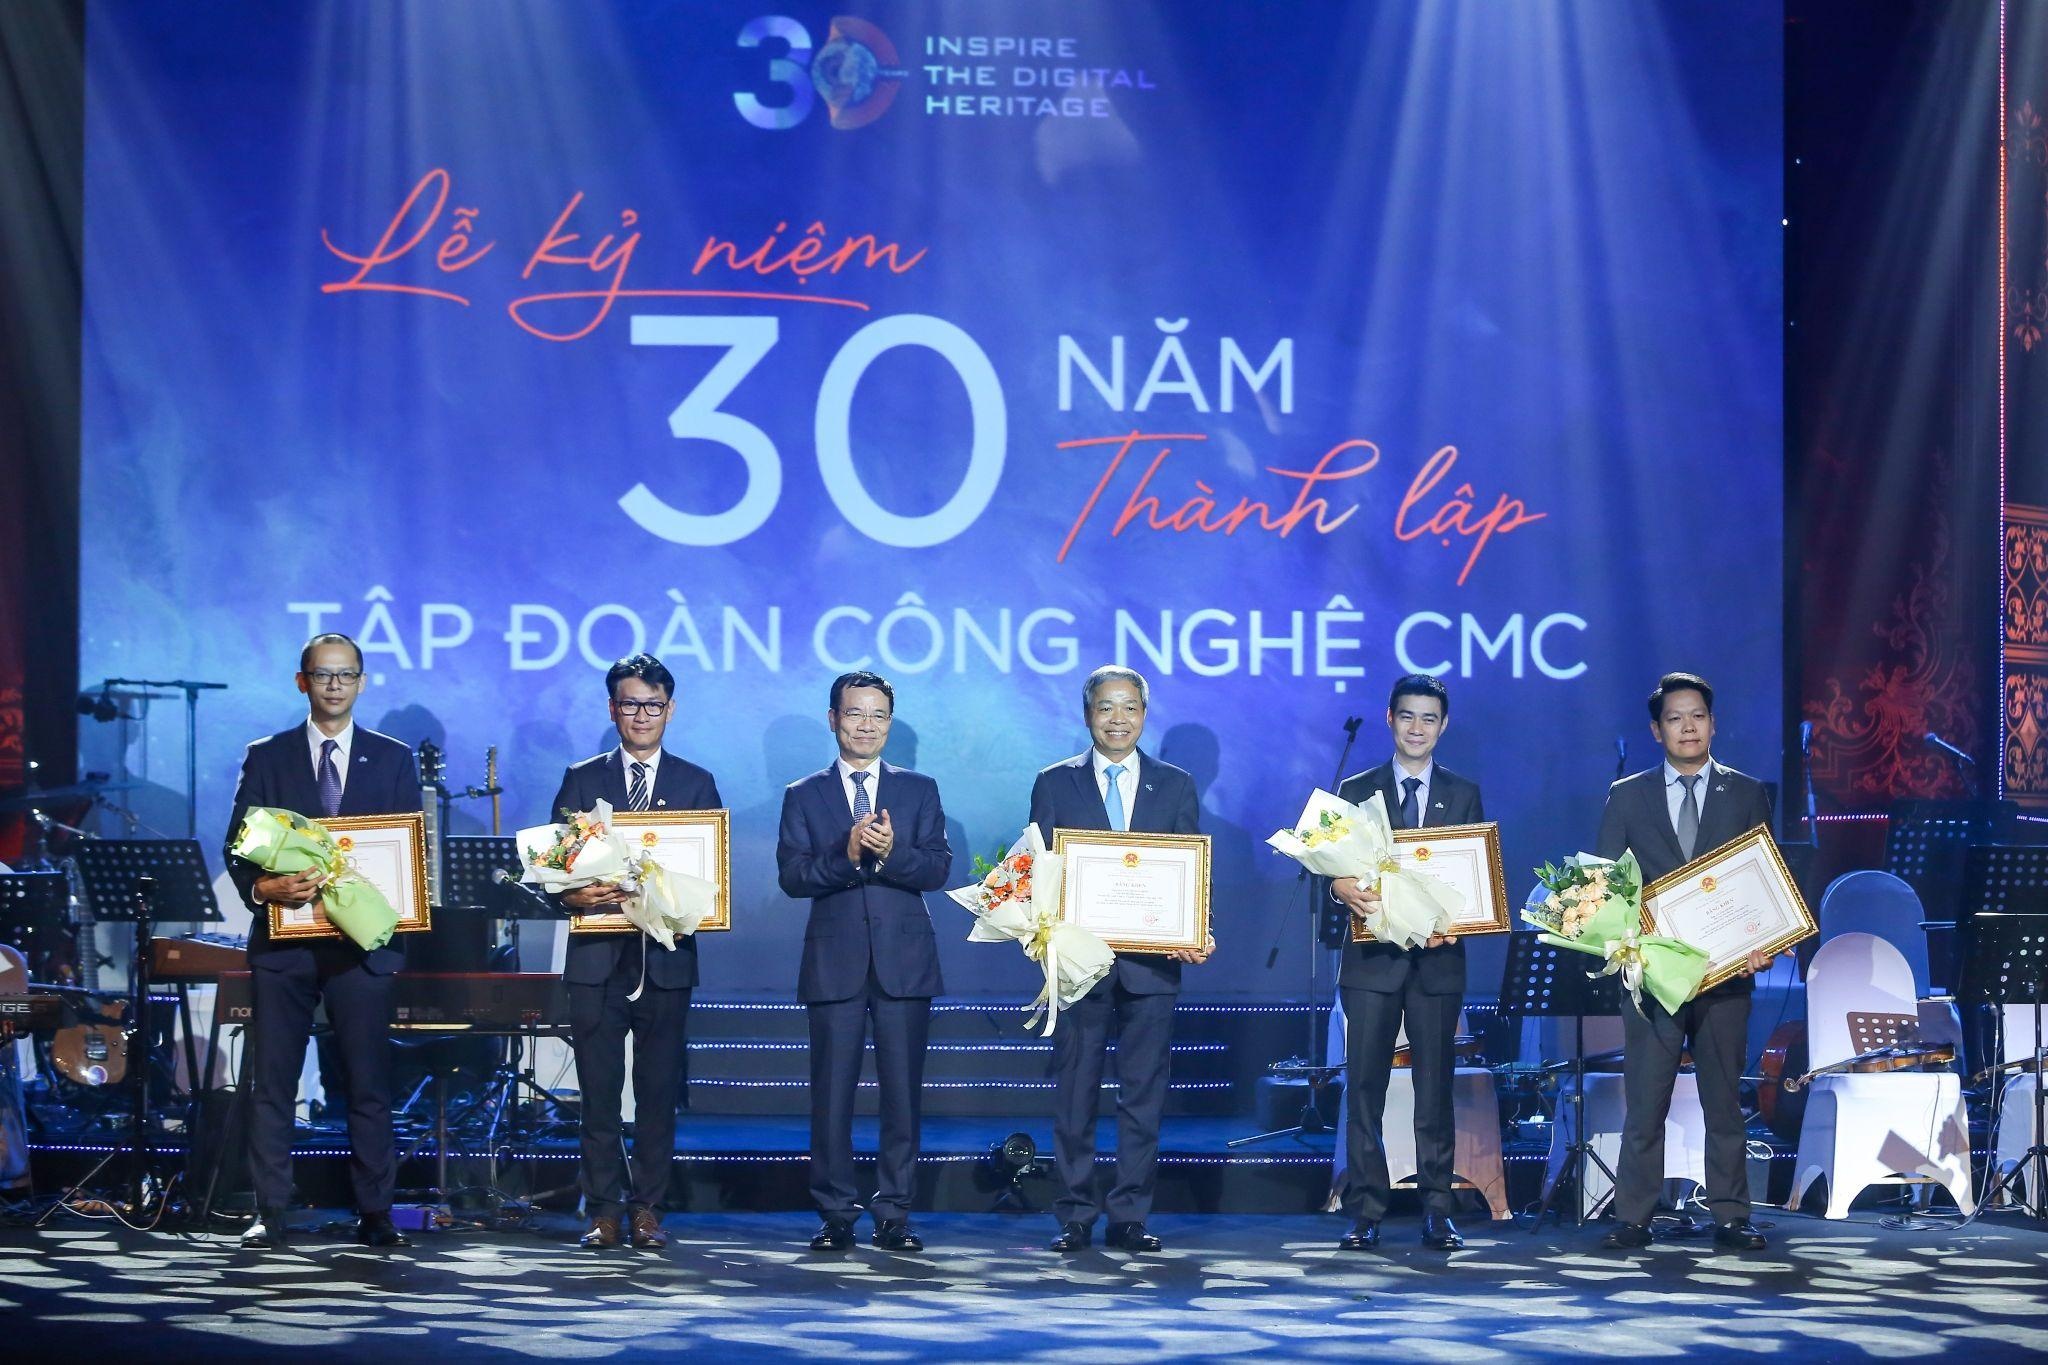 Ông Đặng Ngọc Bảo, TGĐ CMC Global (người đầu tiên bên trái) vinh dự nhận Bằng khen của Bộ trưởng Bộ TTTT nhân kỉ niệm 30 năm thành lập Tập đoàn Công nghệ CMC